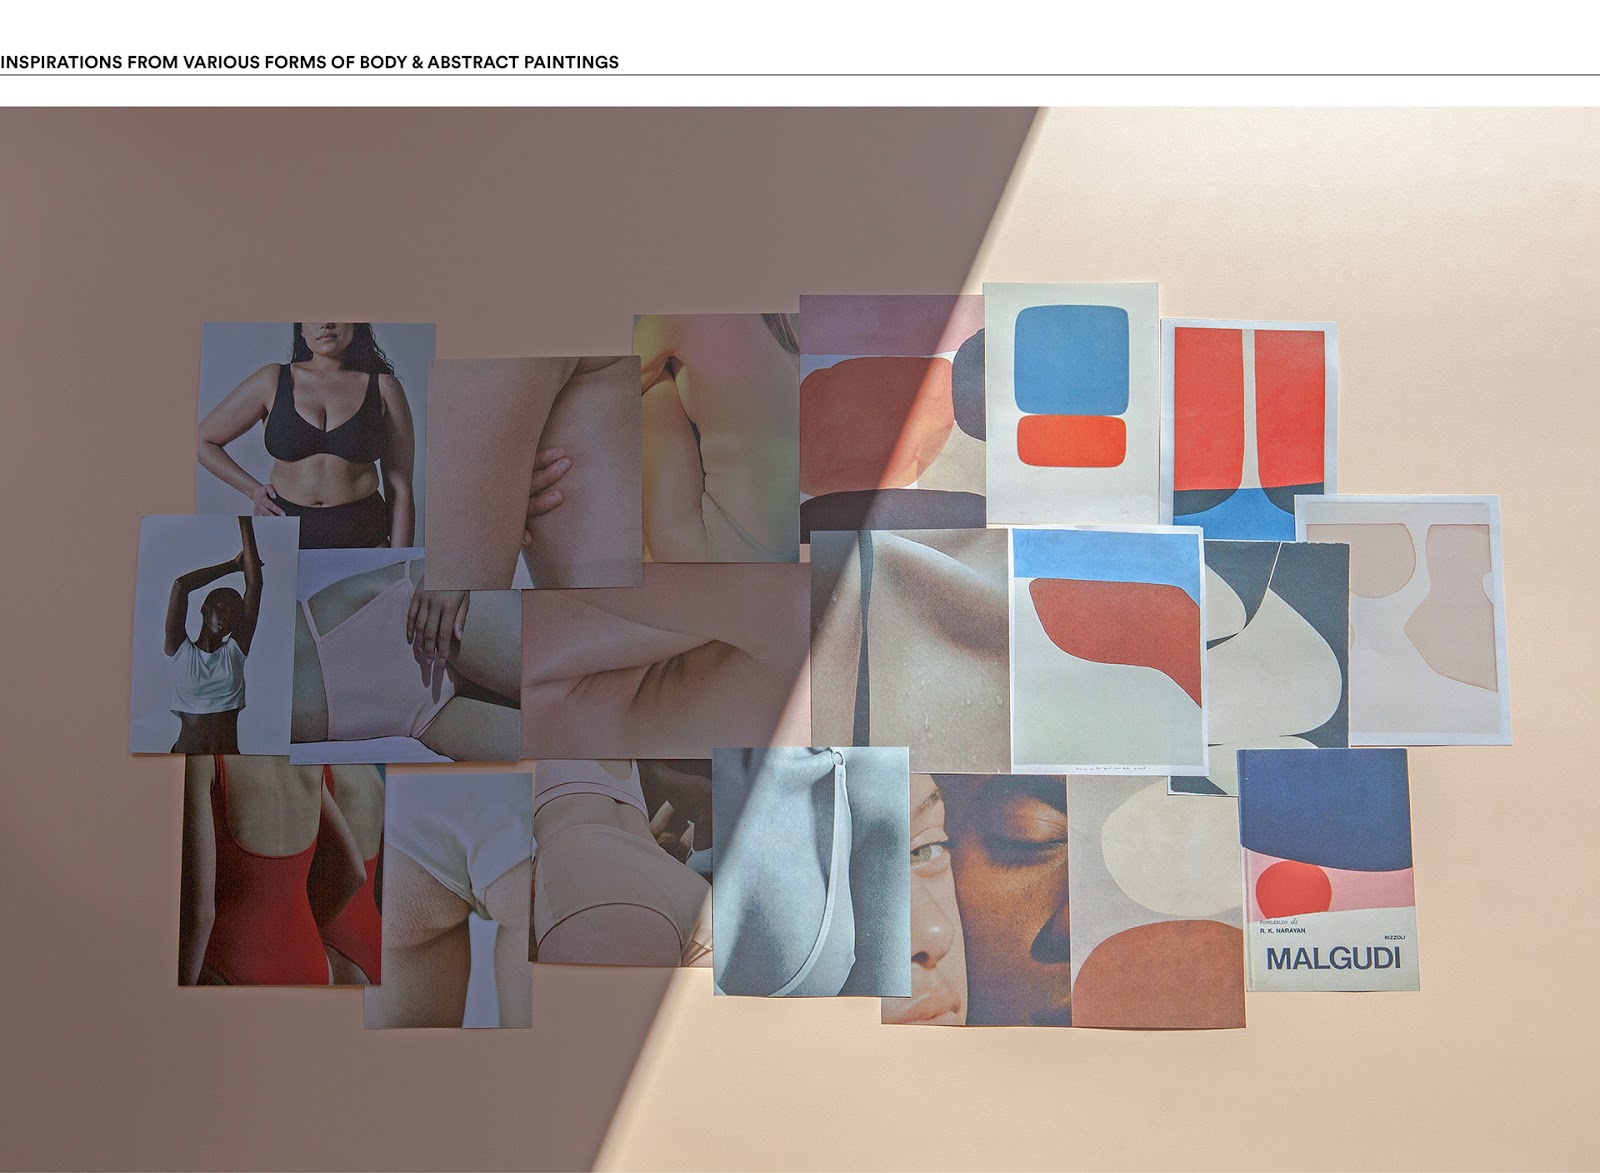 女性内衣女装服饰西安oe欧亿体育app官方下载
品牌策划包装设计VI设计logo设计